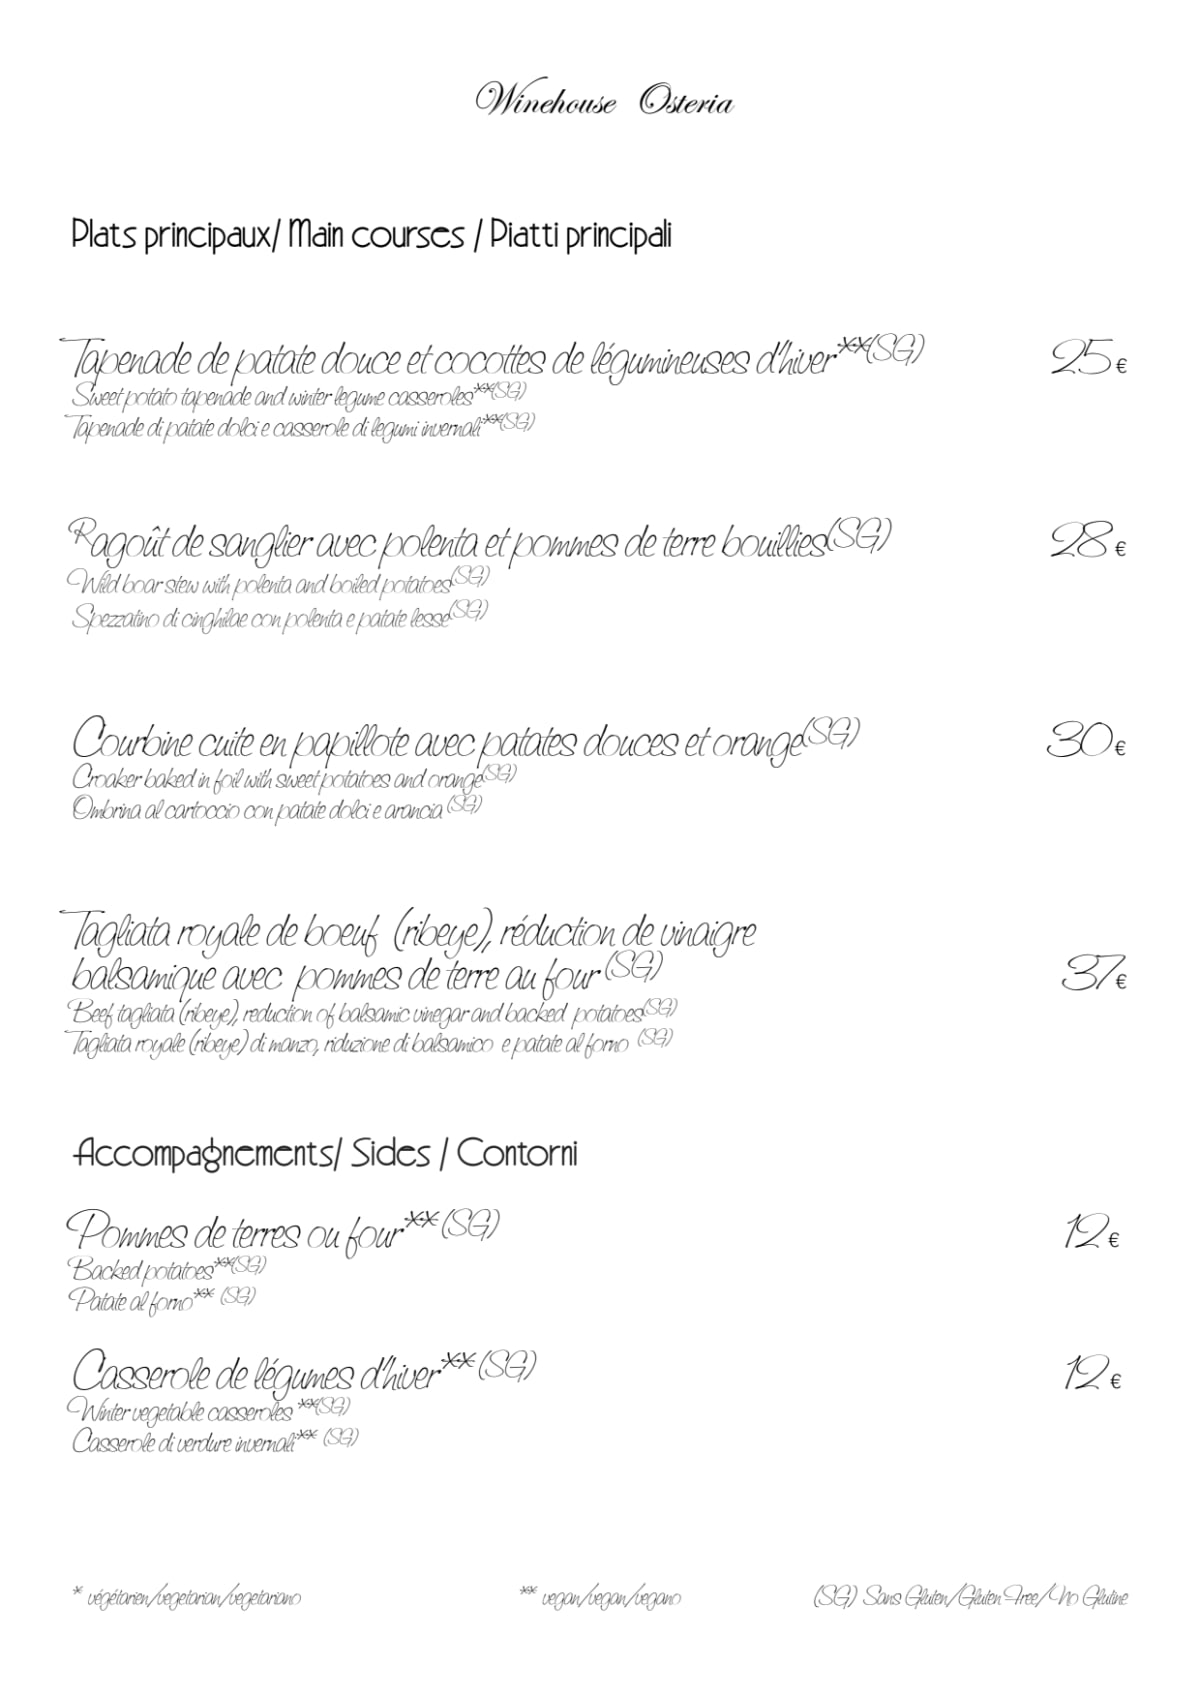 Winehouse Osteria menu